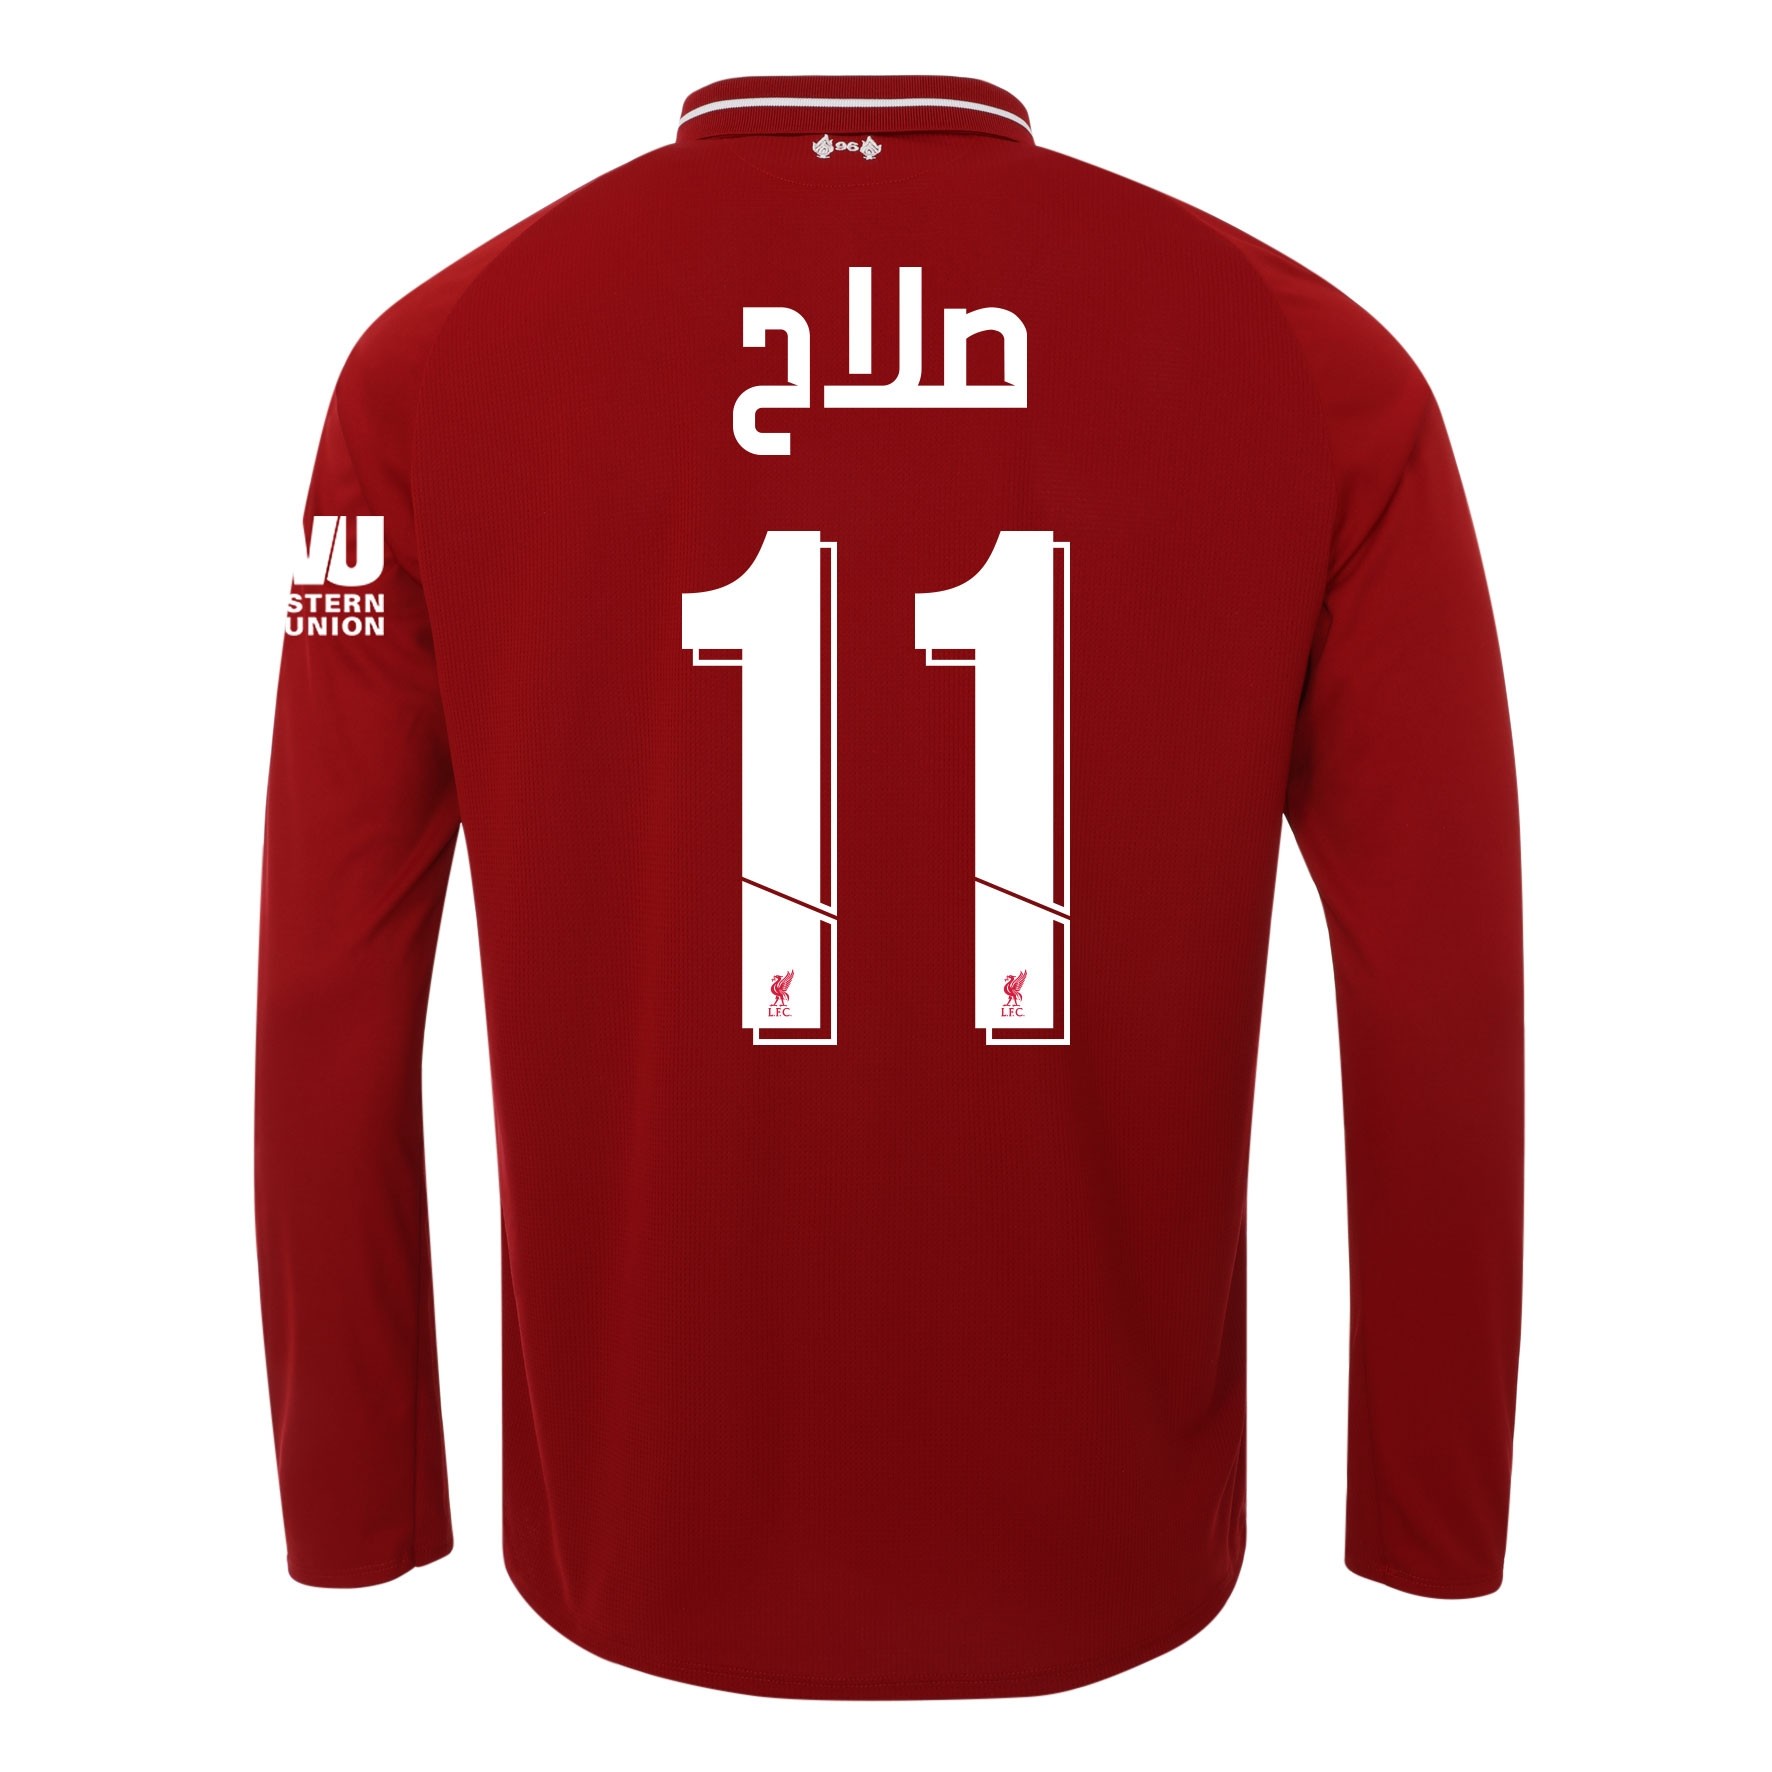 LFC Mens Long Sleeve Home Shirt 18/19 - Salah